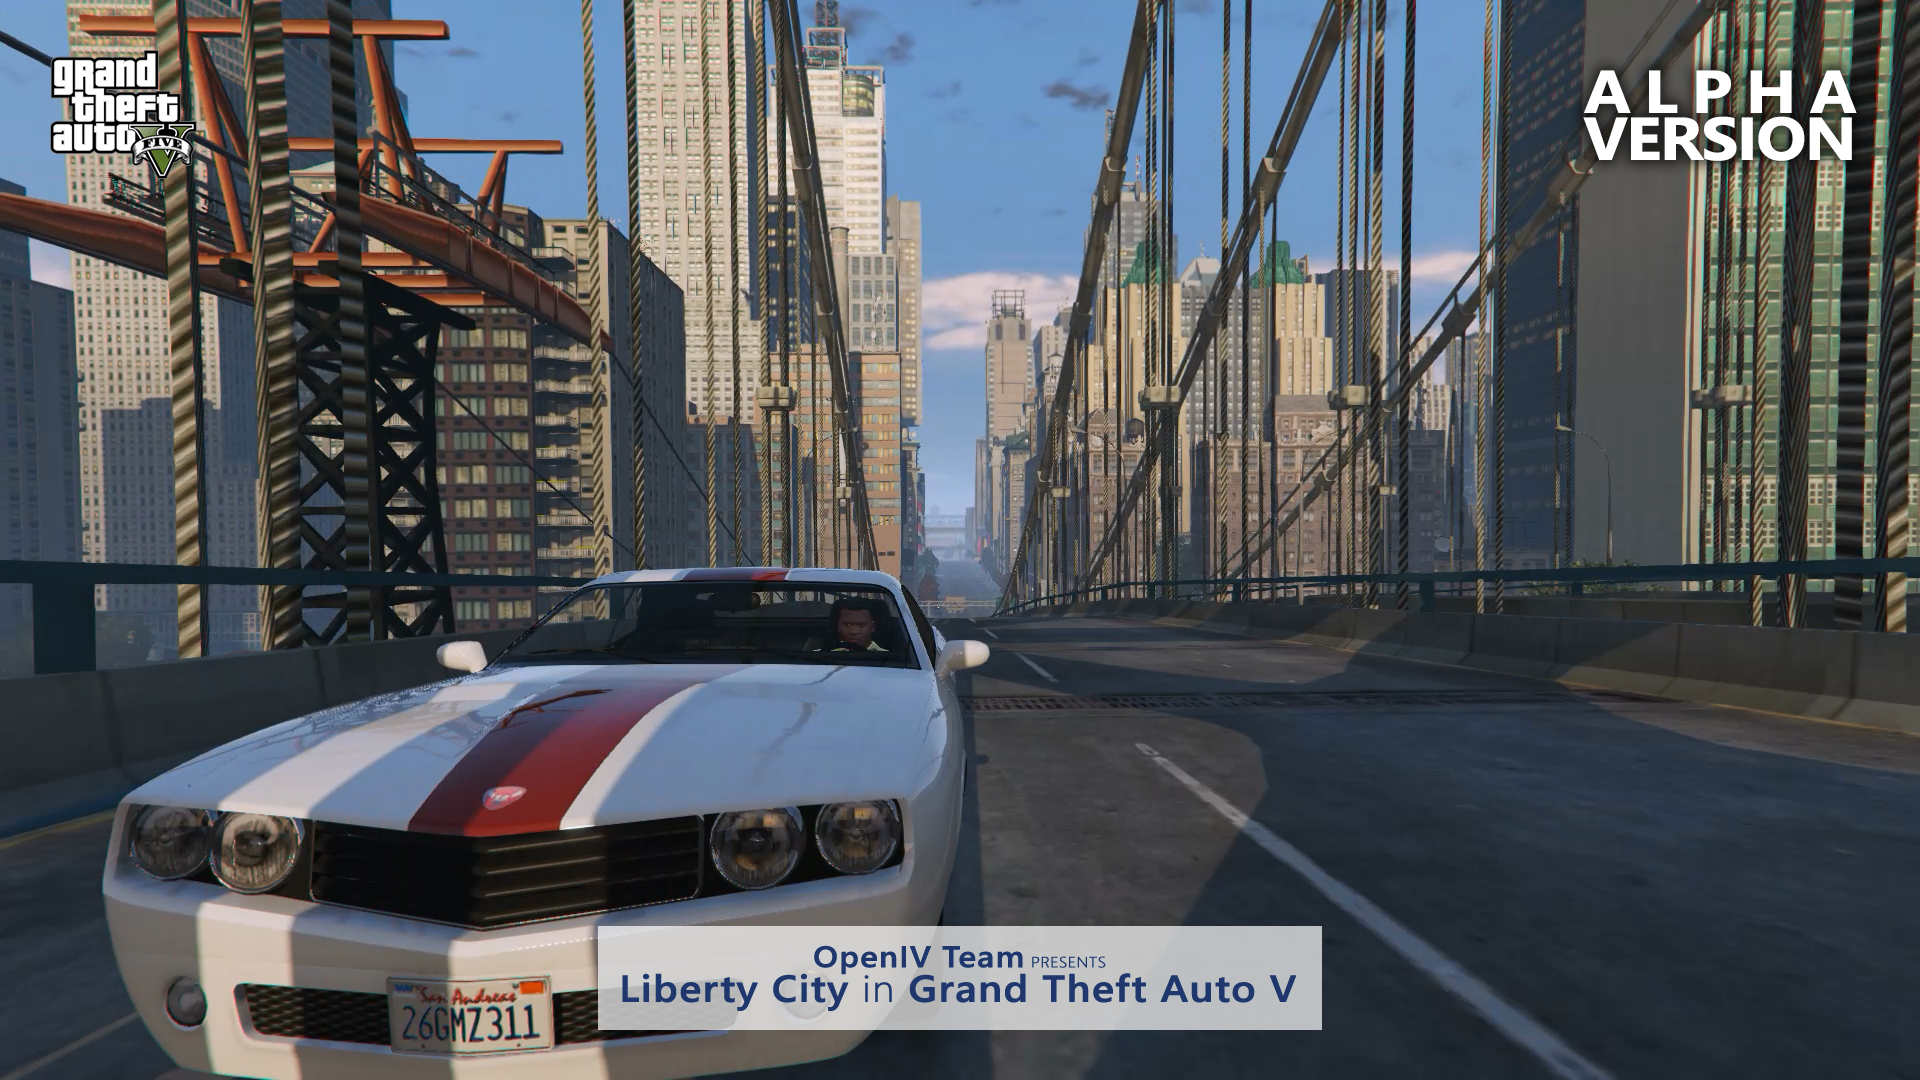 Podívat se do Liberty City budeme v GTA V moct už za pár týdnů